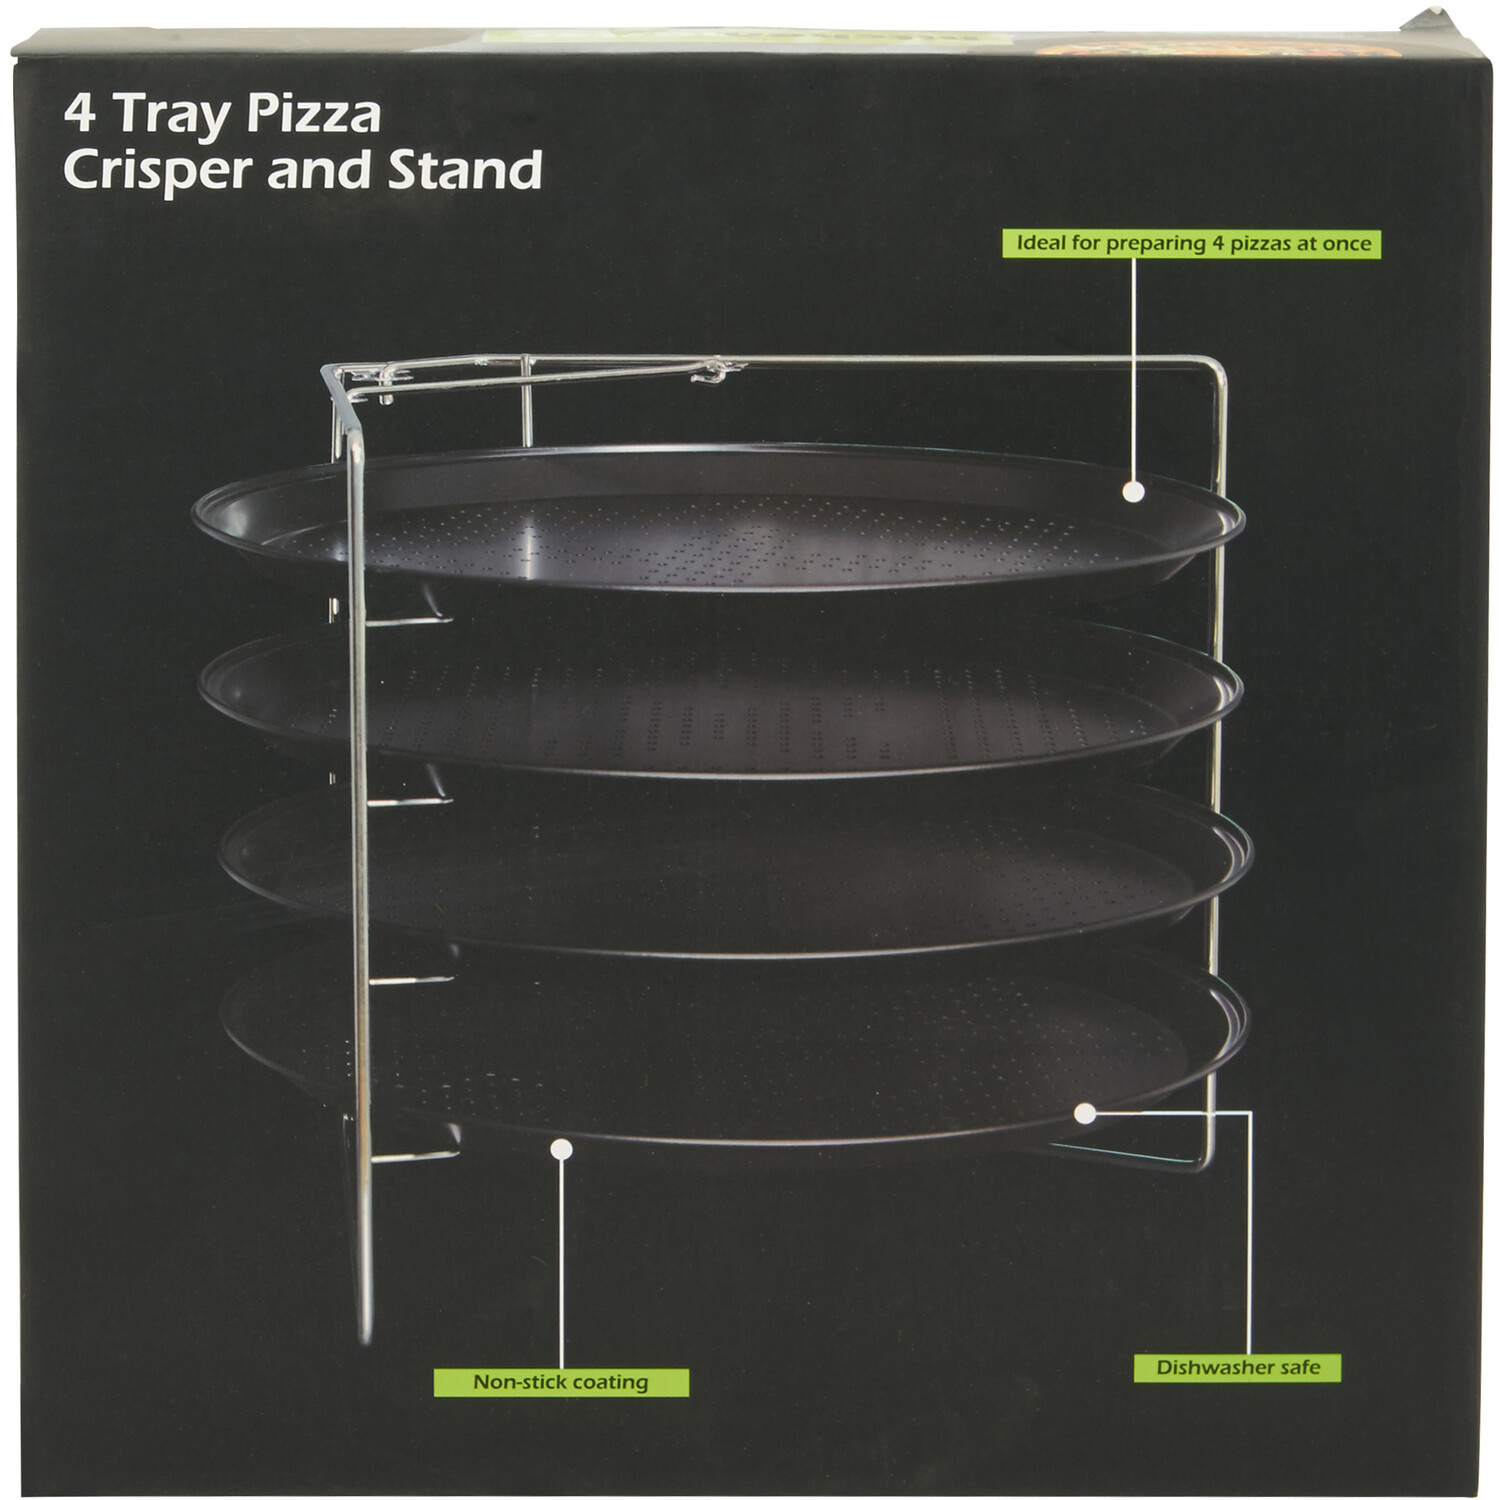 4 Tray Pizza Crisper and Stand - Black Image 2